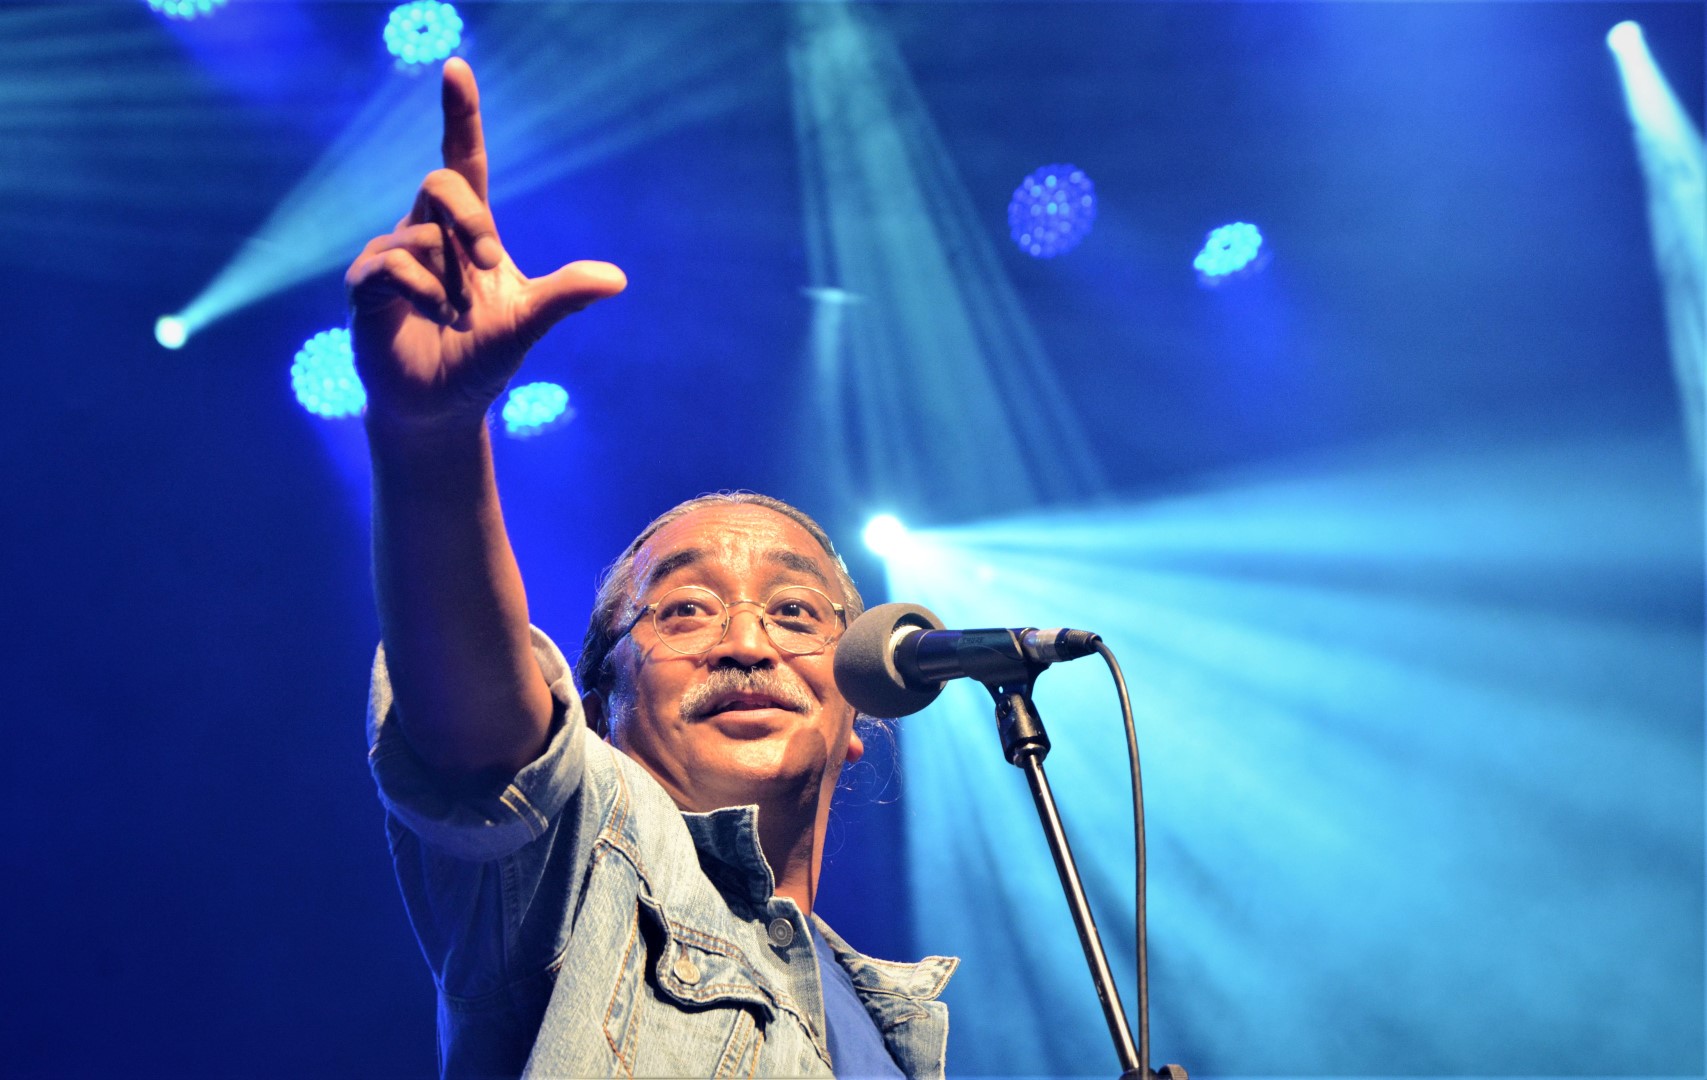 नेपथ्यका गायक अमृतको अडान : राजनीतिक टिप्पणीमा बन्देज लगाउने प्रयास नगर्नुहोला